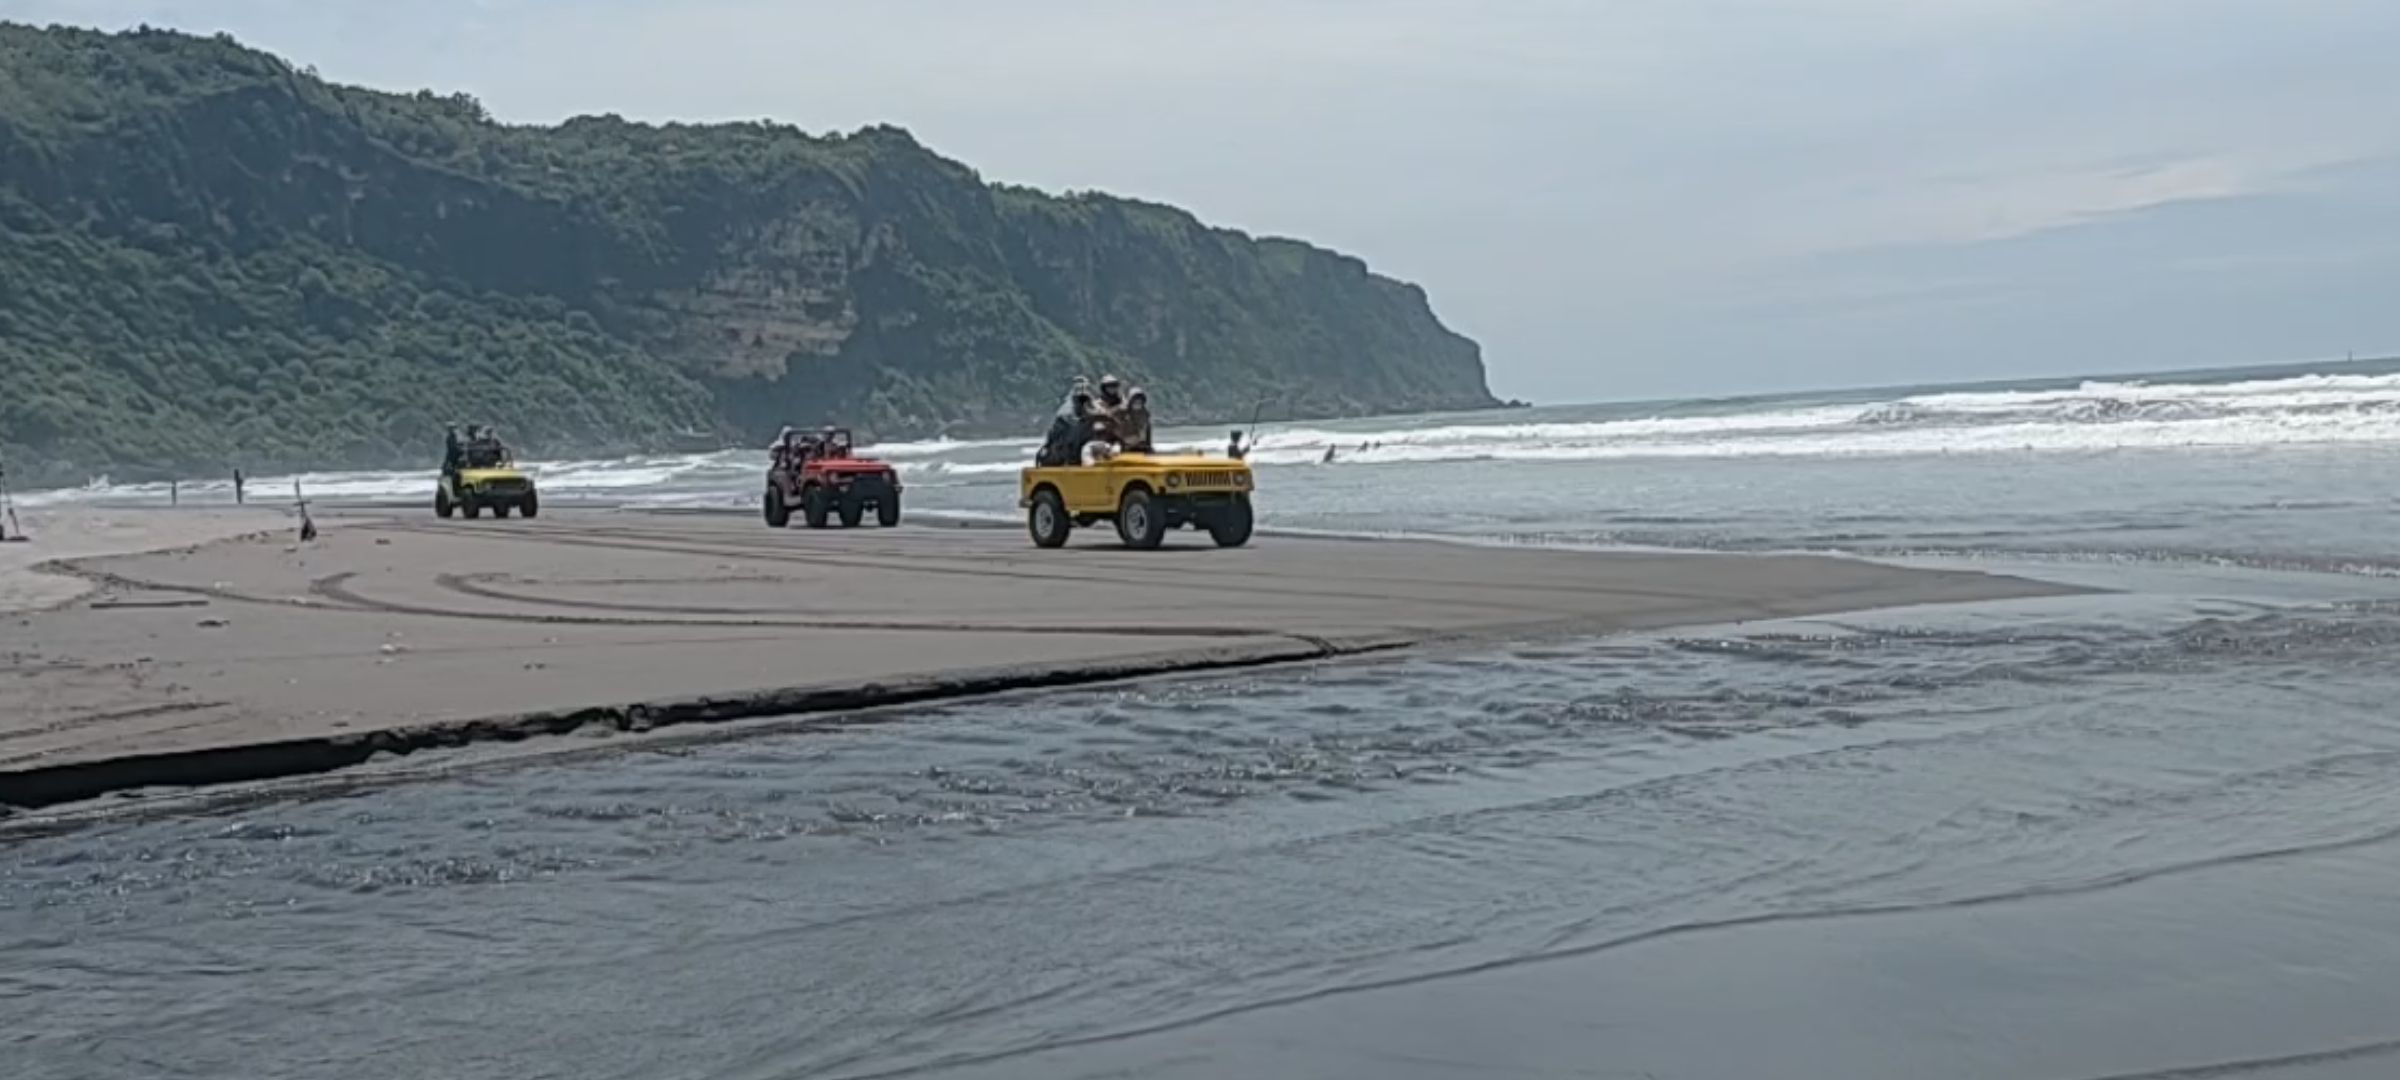 Bagi wisatawan yang datang bermain jeep dengan beberapa jeep sekaligus, bisa meminta supir untuk balapan di pasir yang ngeri-ngeri sedap./DeskJabar.com/Dicky Harisman/